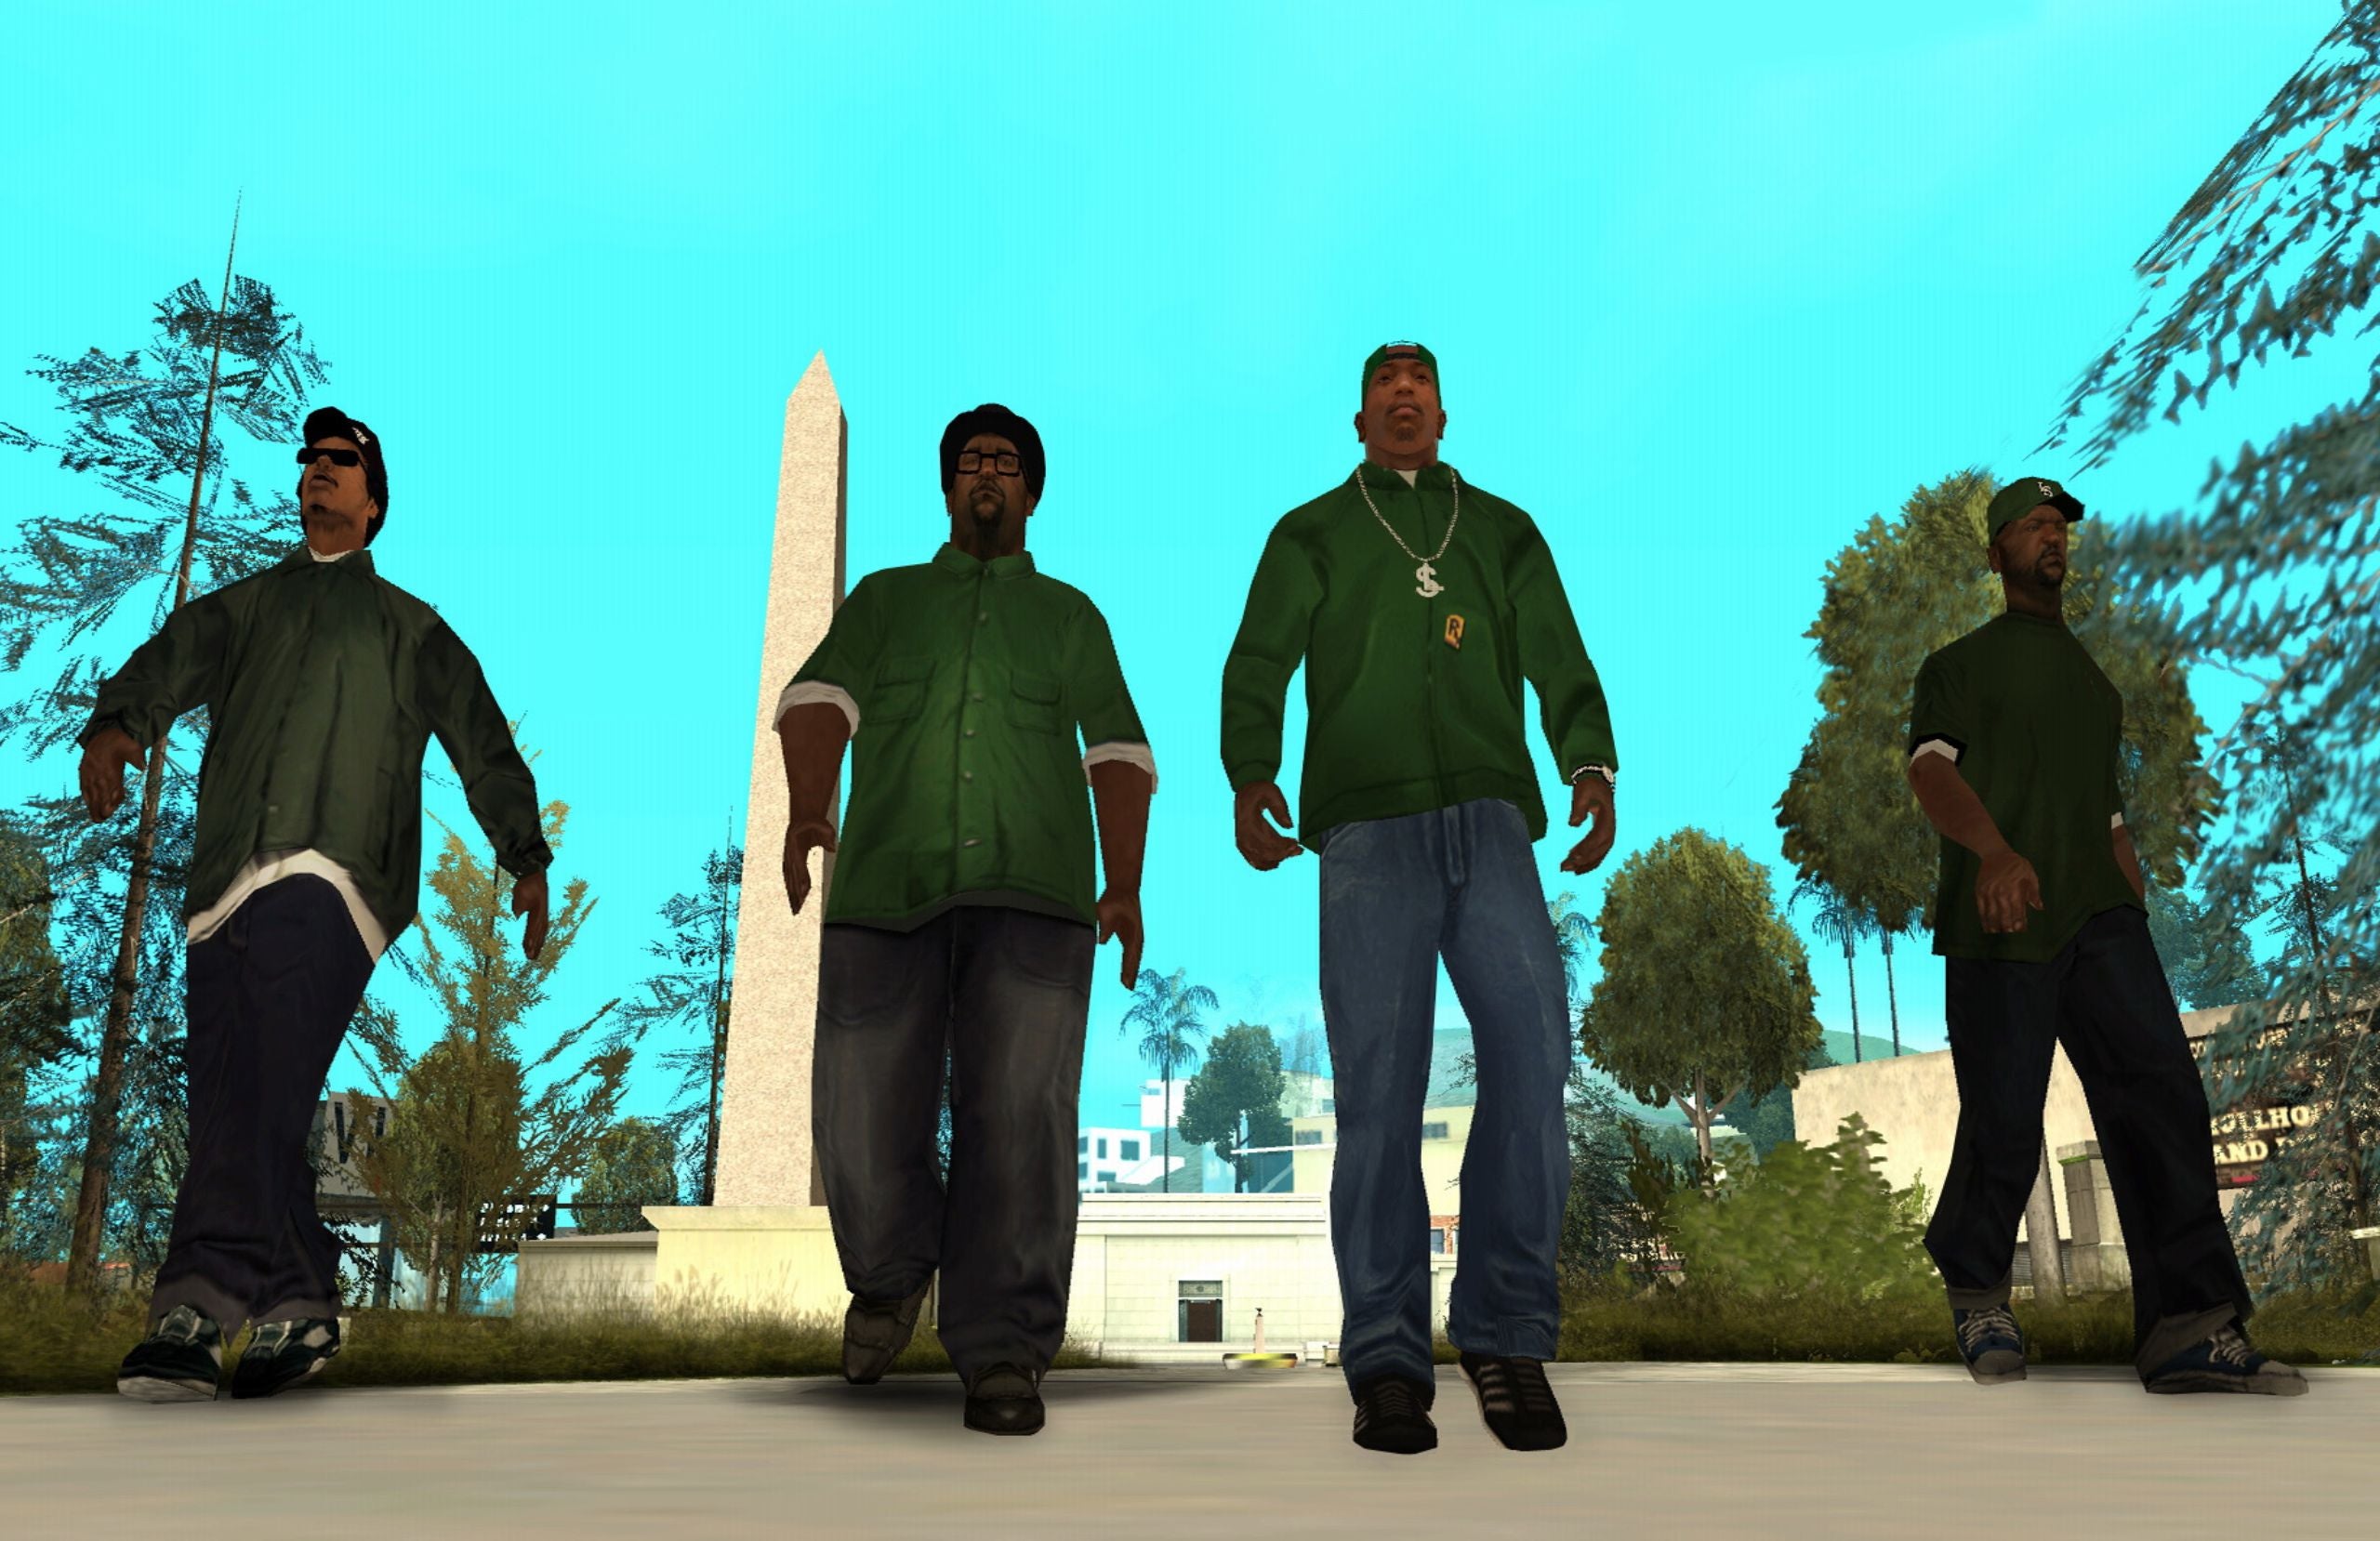 GTA San Andreas characters